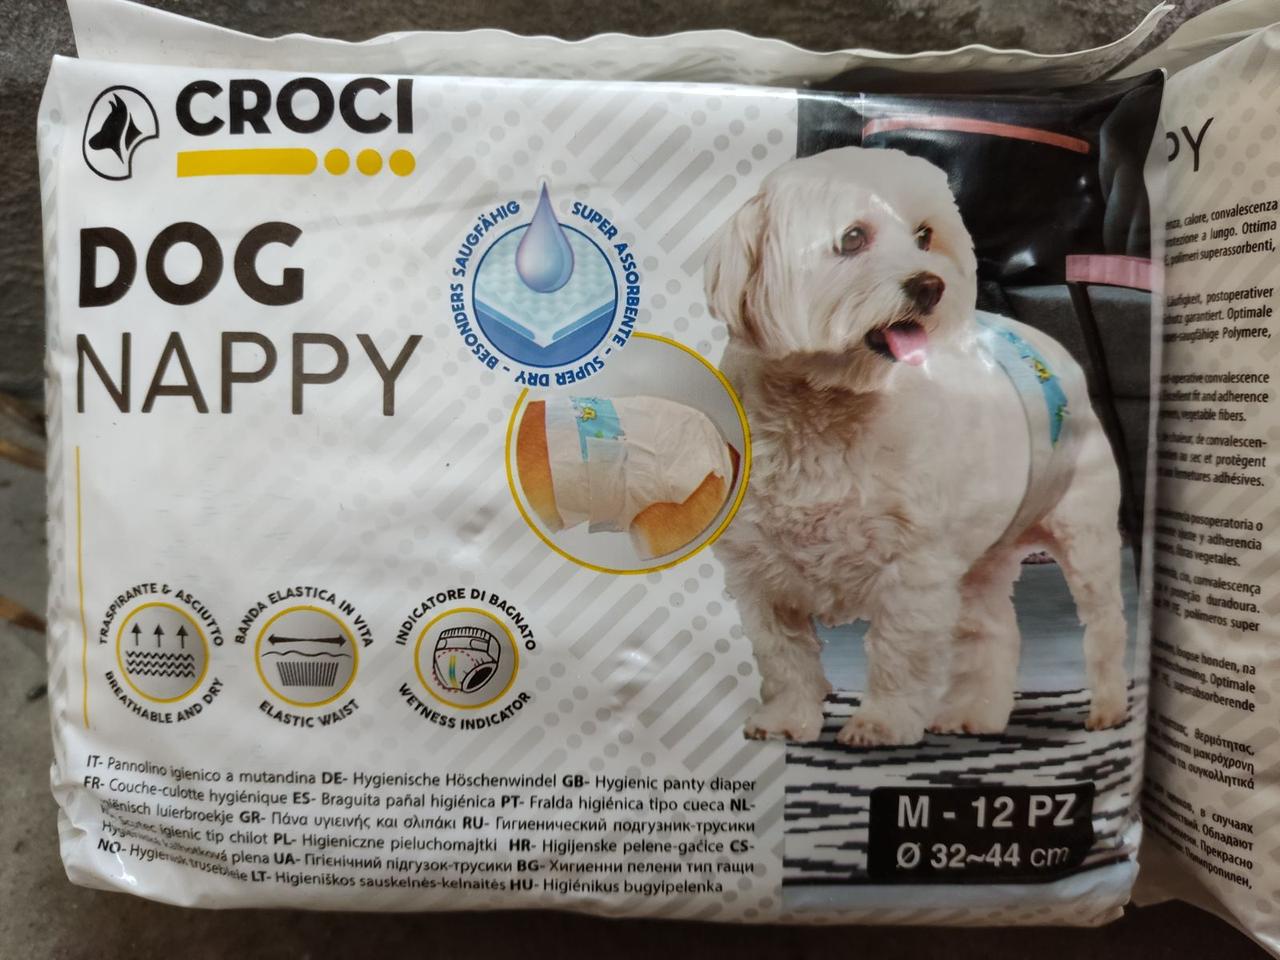 Фото - Прочее для собак Croci Подгузники для собак  Dog Nappy M, вес 3-6 кг, обхват 32-44 см, 12 шт 